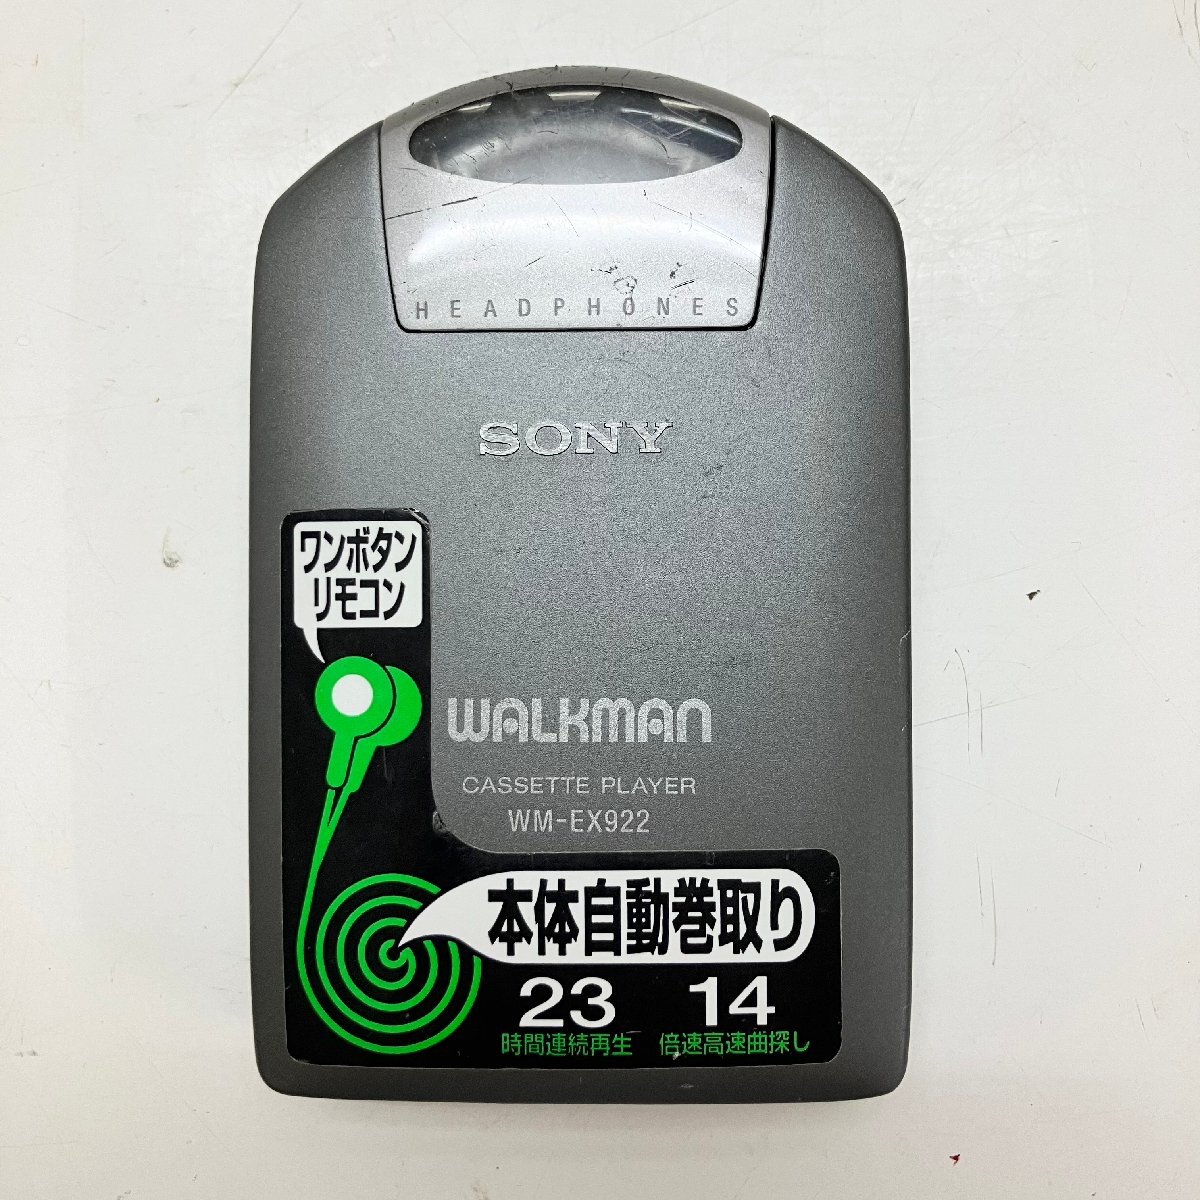 ◆【ジャンク品】SONY ソニー WM-EX922 WALKMAN カセットプレーヤー ウォークマン グレー 現状品 (E1)N/G60419/1/0.2の画像1